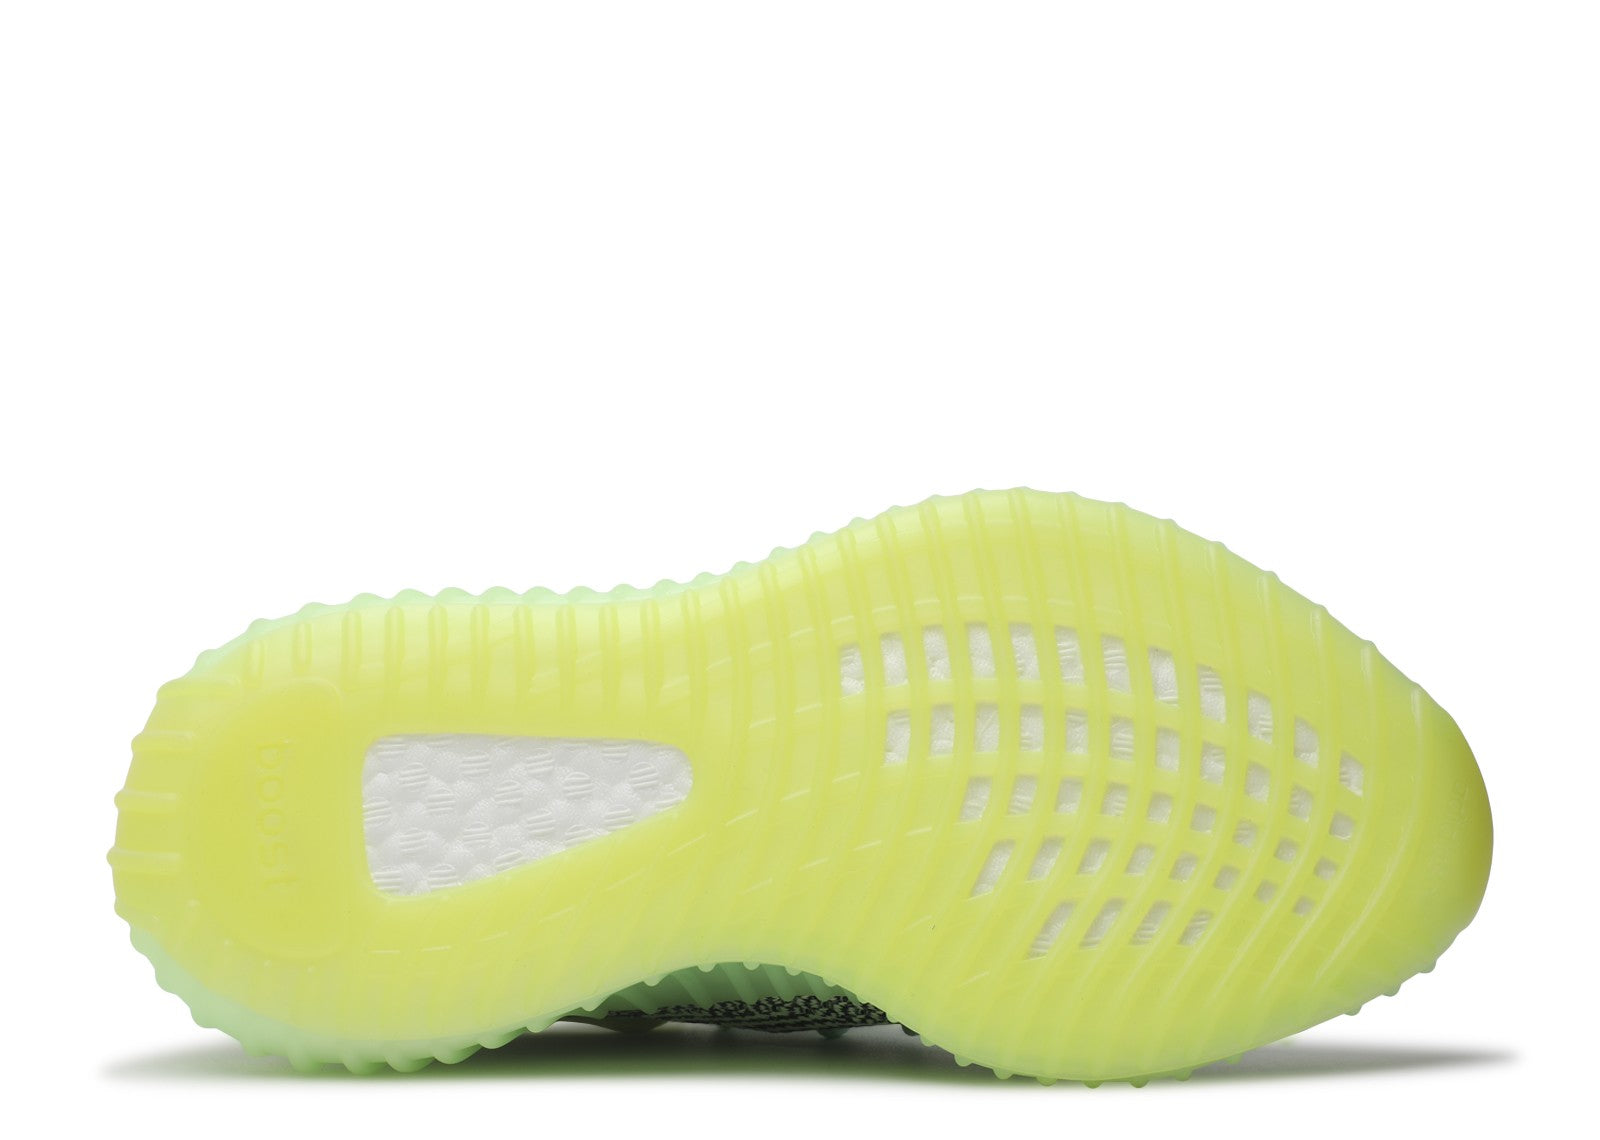 Adidas Yeezy Boost 350 V2 'Yeezreel Reflective'